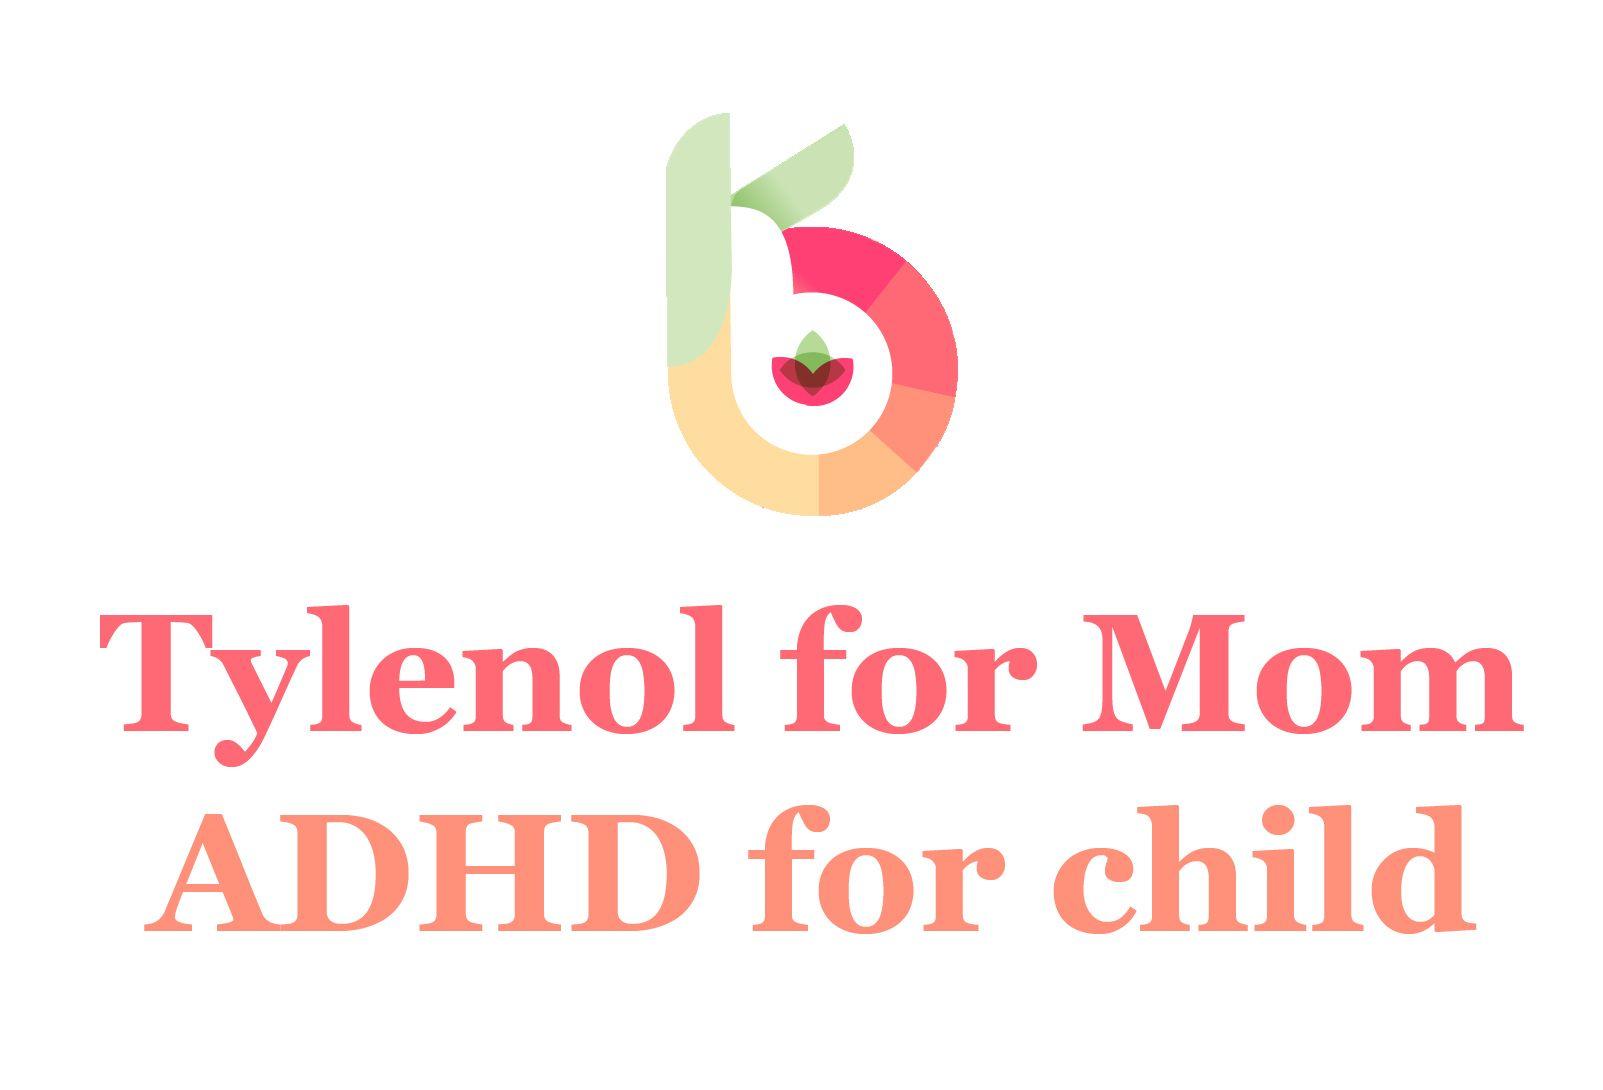 Tylenol Logo - Tylenol for Mom: ADHD for Child - Kelly Brogan MD